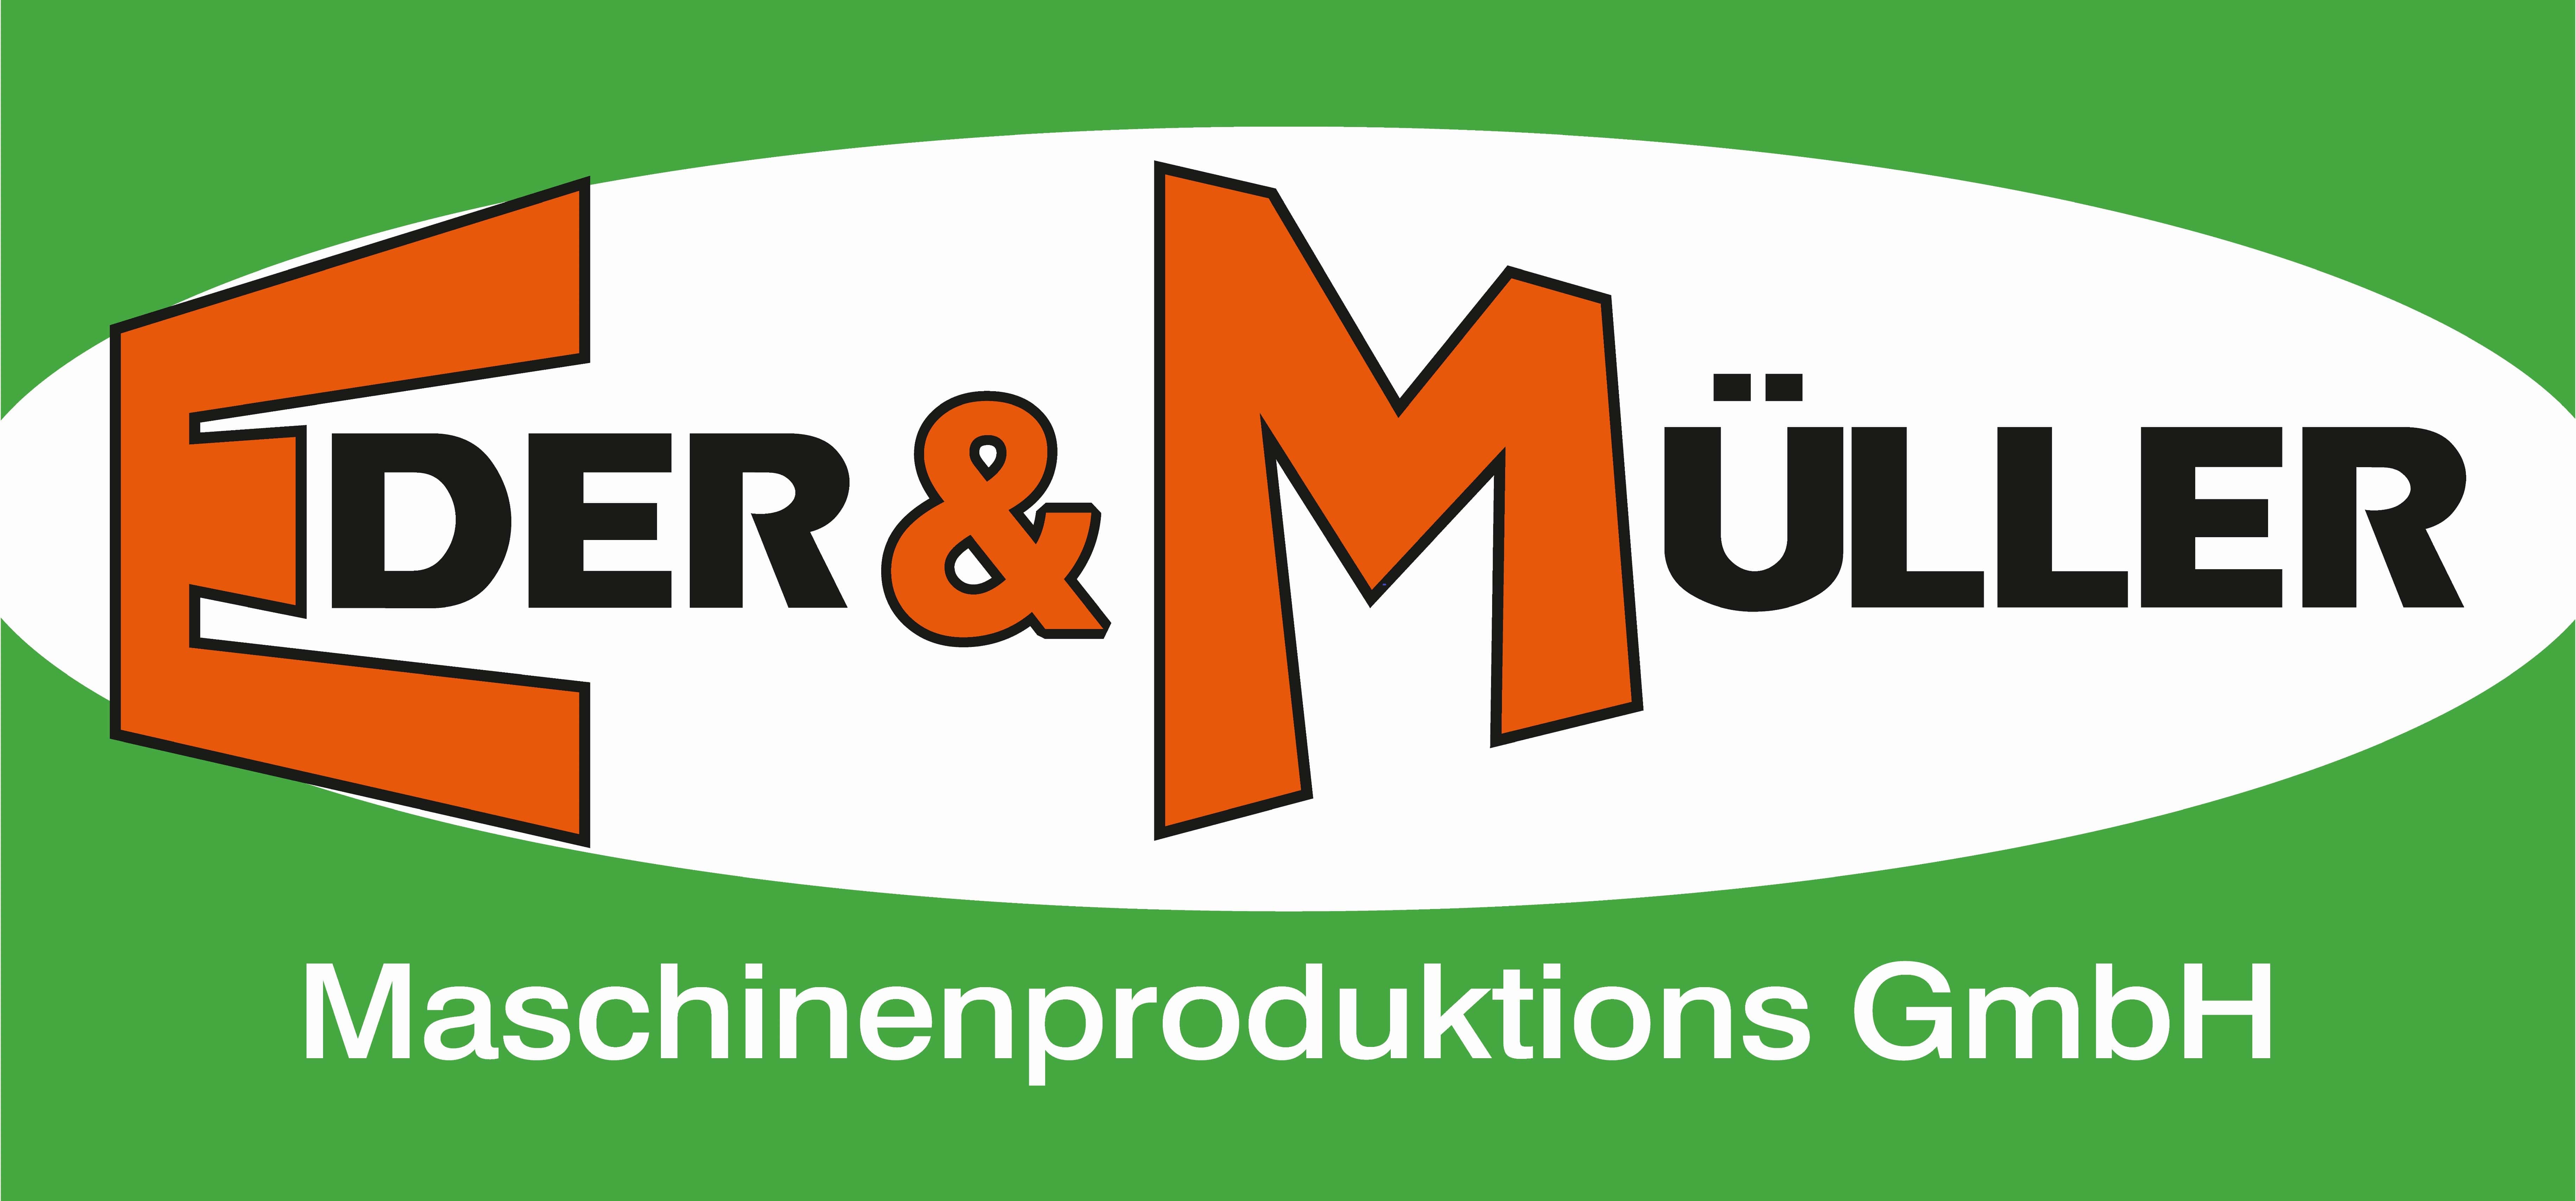 Eder & Müller Maschinenproduktions GmbH